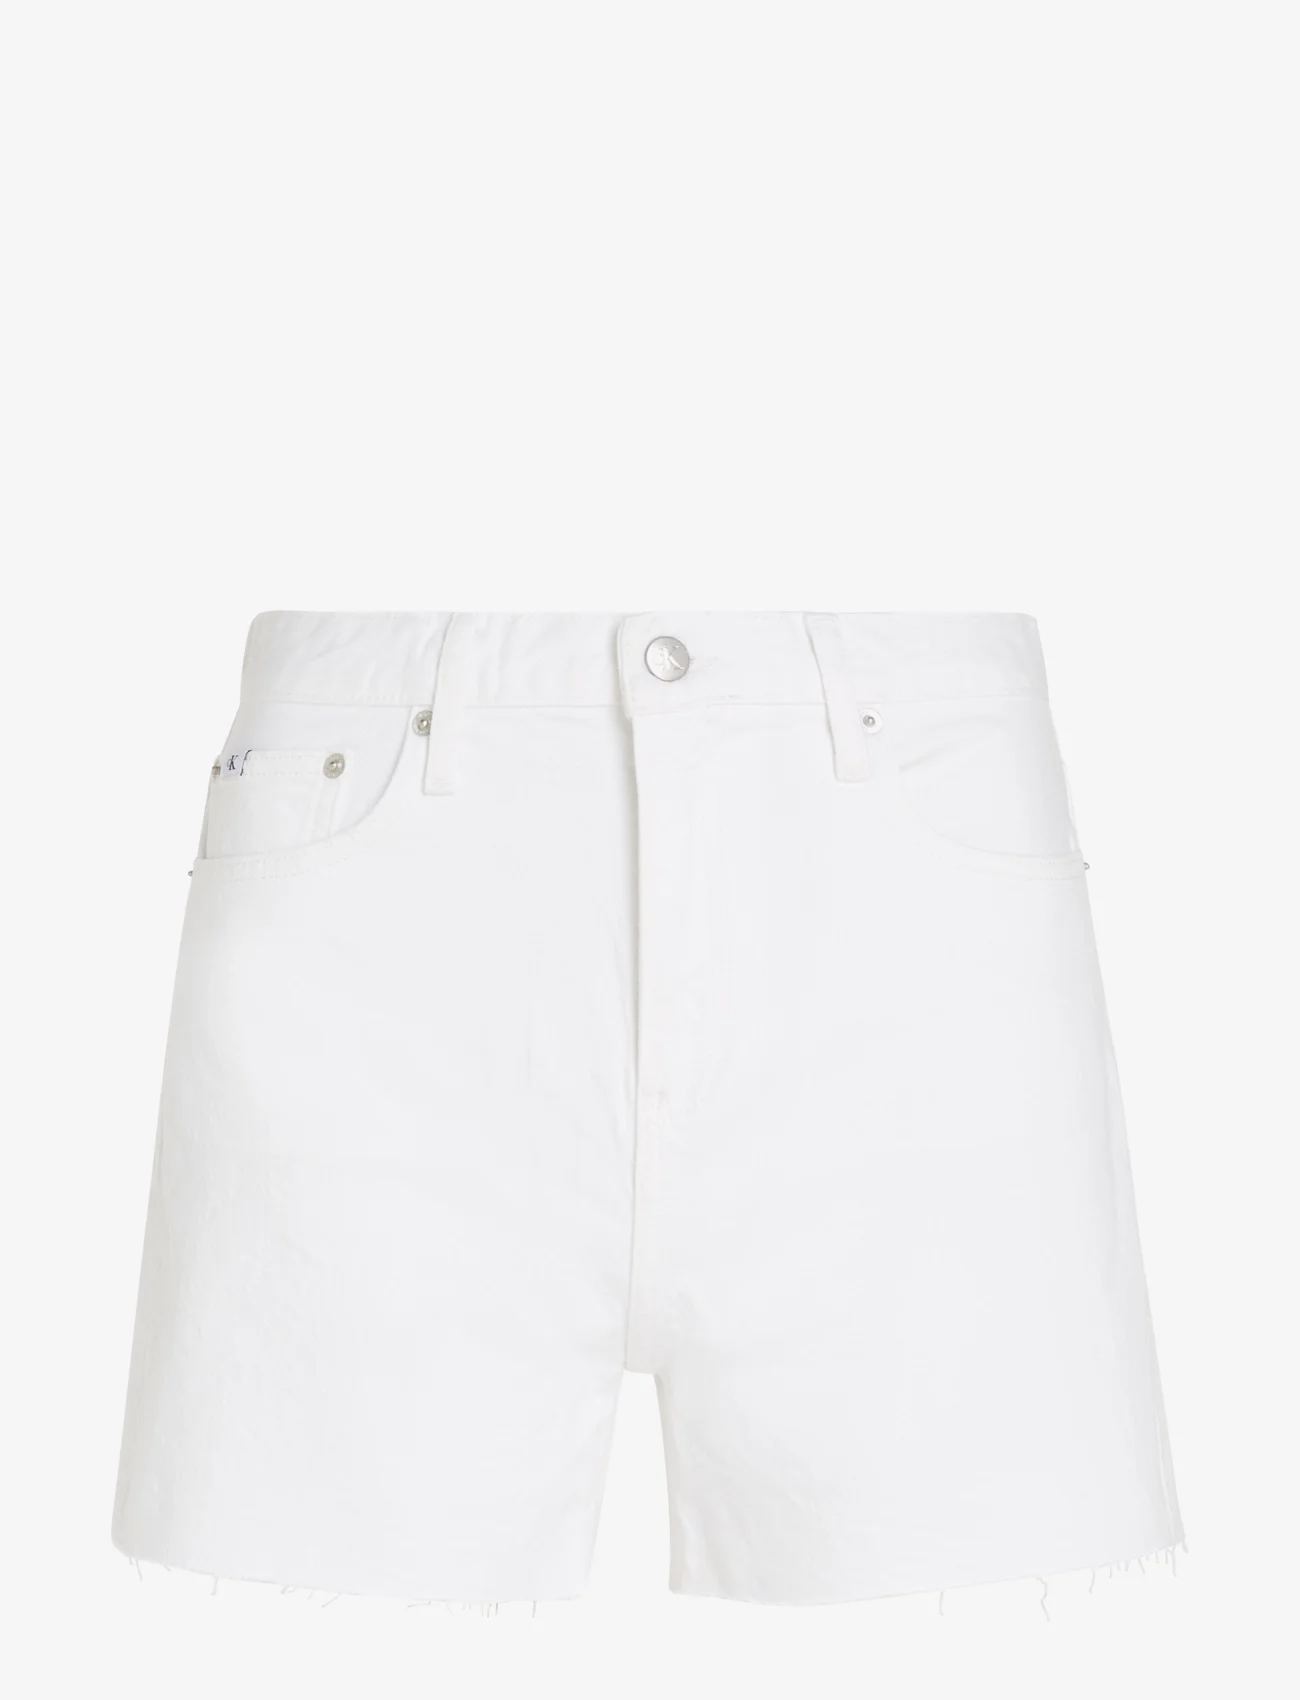 Calvin Klein Jeans - MOM SHORT - denimshorts - denim light - 0